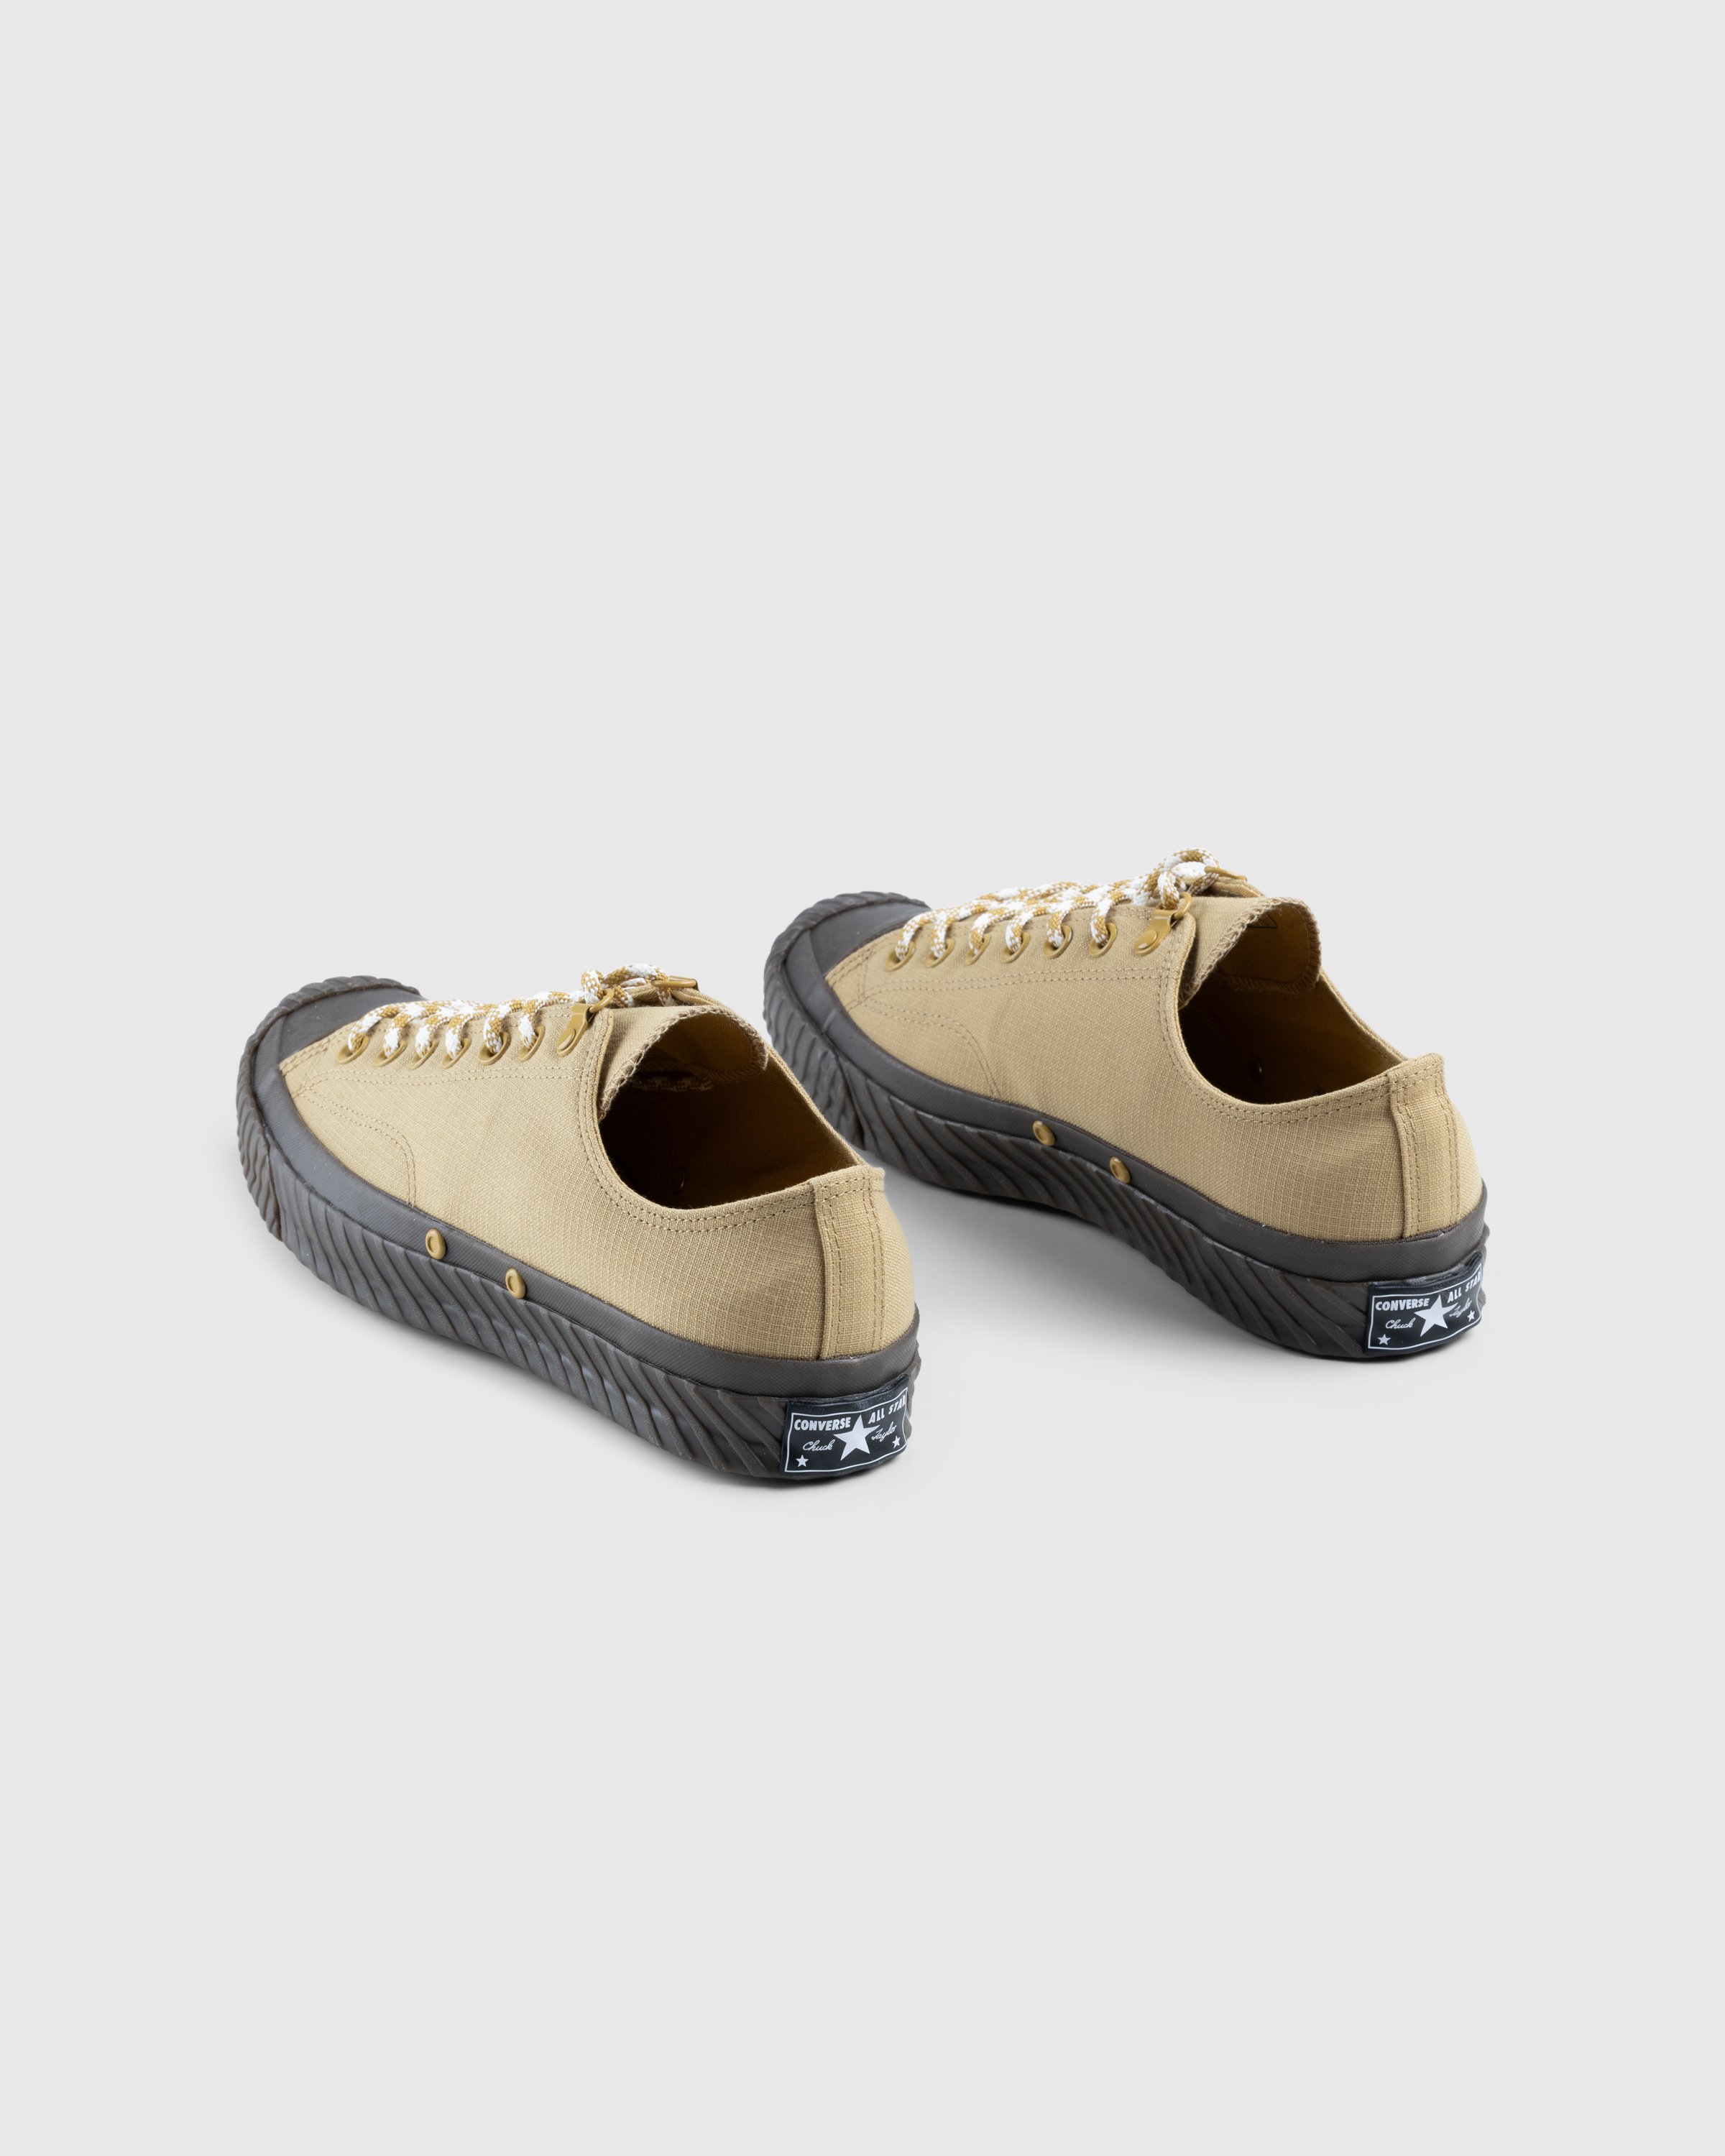 Converse - CHUCK 70 BOSEY OX DUNESCAPE/DUNESCAPE - Footwear - Multi - Image 4